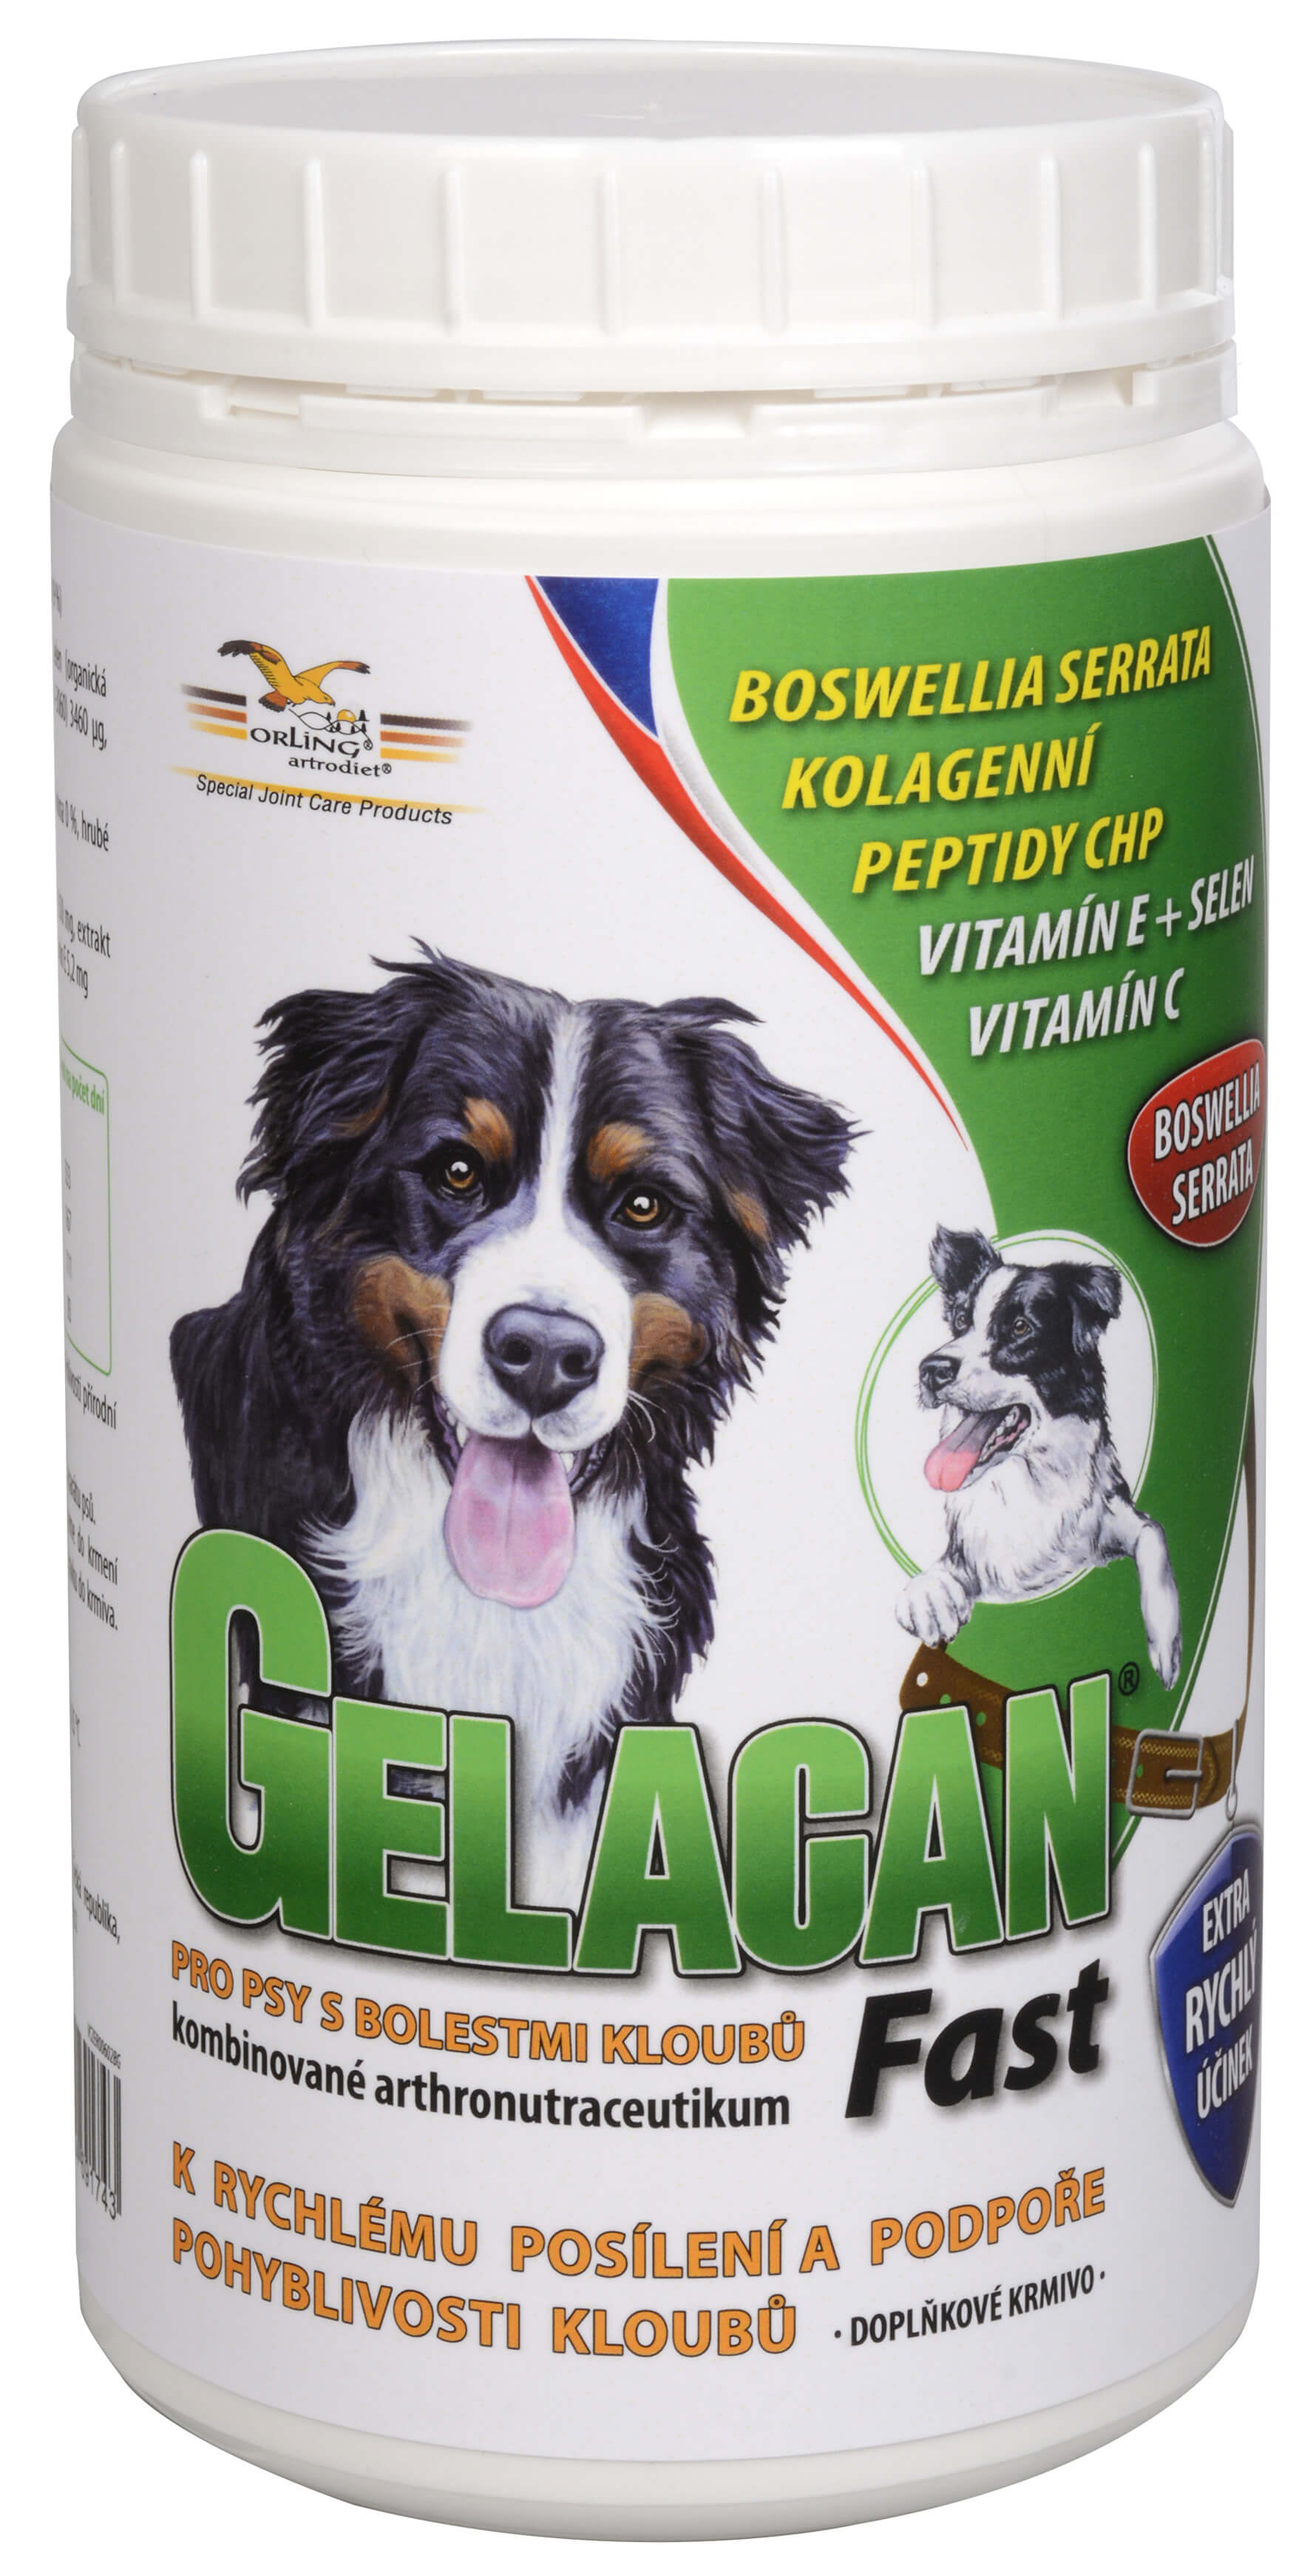 Zobrazit detail výrobku GELACAN Gelacan Fast 500 g + 2 měsíce na vrácení zboží